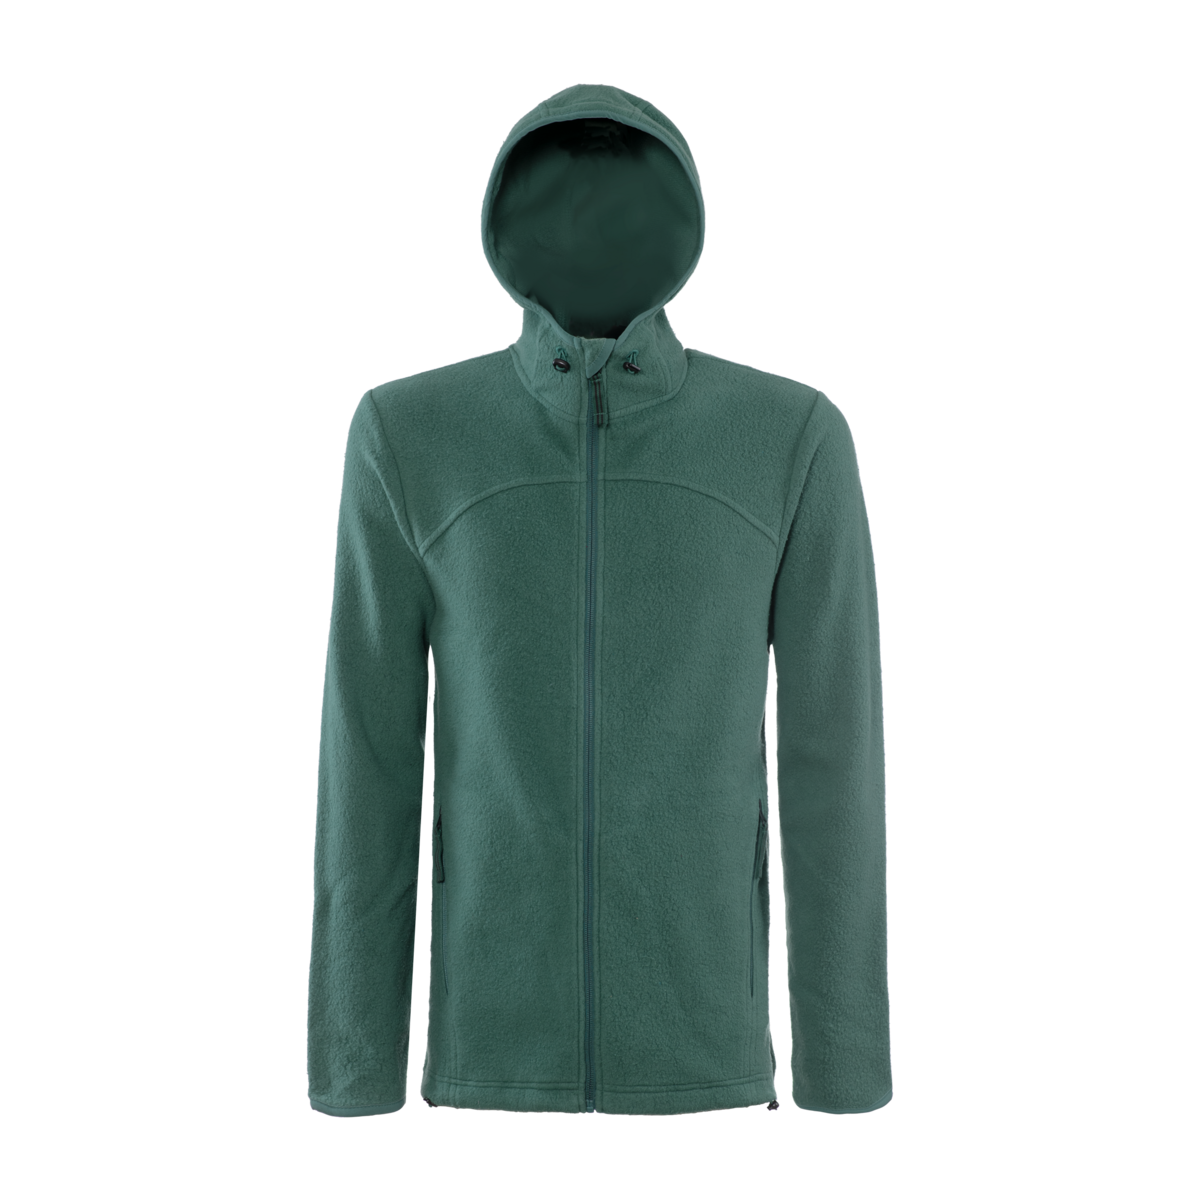 Green Fleece jacket, NORDIAN